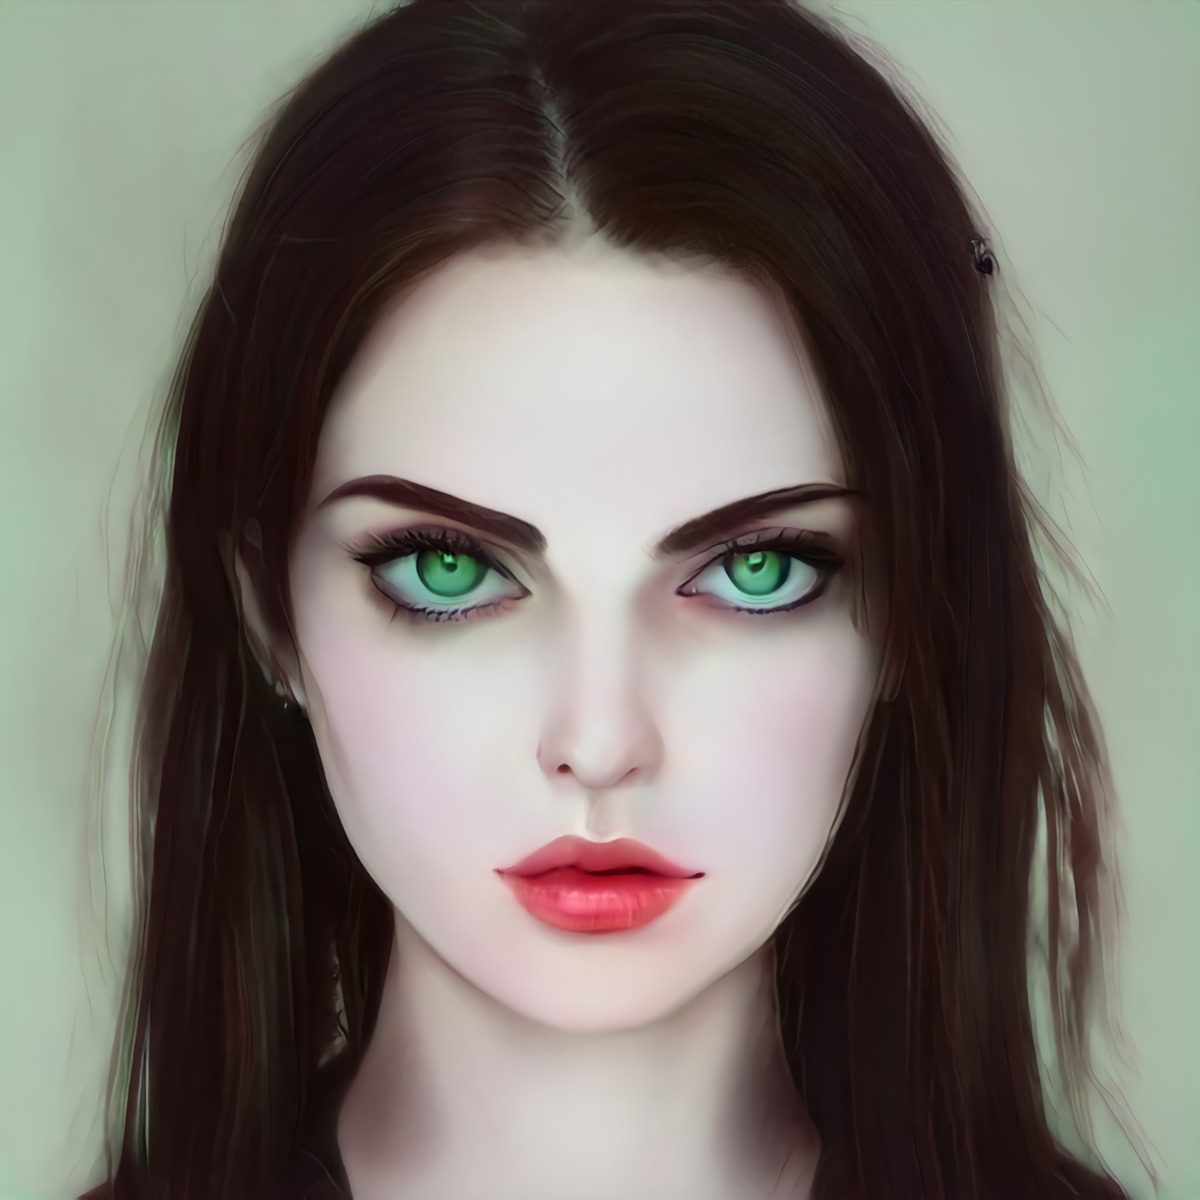 Portrait einer jungen Frau mit großen, grünen Augen, dunklen Haaren und einem kleinen, herzförmigen Mund. Sie über-erfüllt ein gesellschaftliches Schönheitsideal und doch wirkt sie und ihr durchdringender Blick unheimlich.